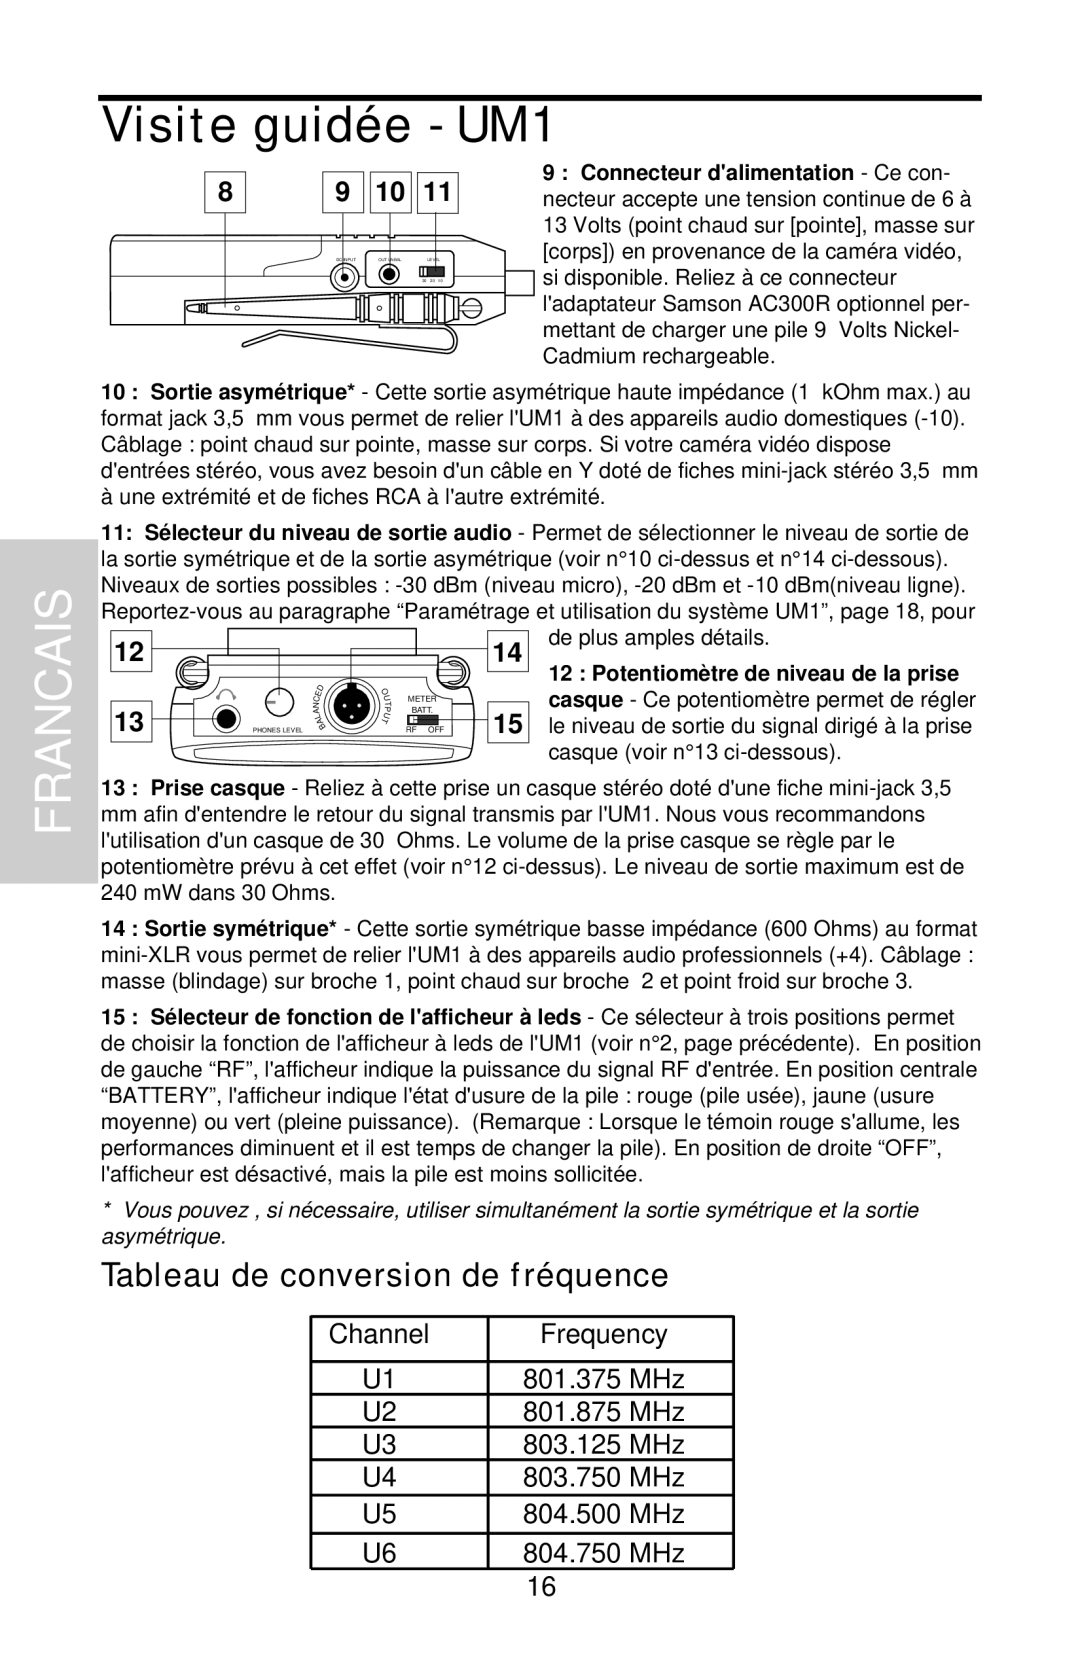 Samson UHF Series One owner manual Tableau de conversion de fréquence, Francais, Visite guidée - UM1 